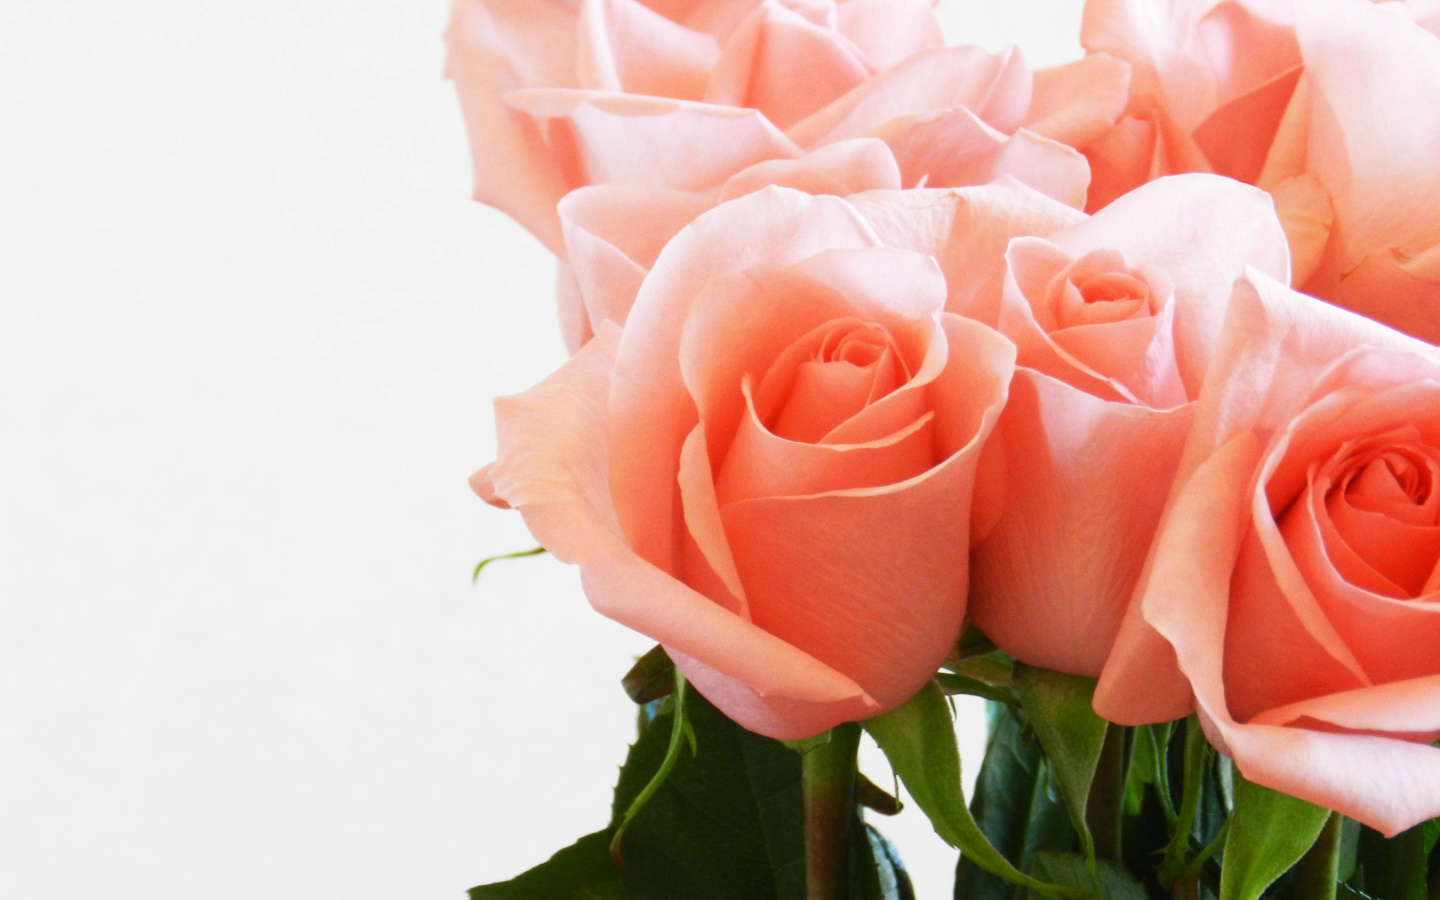 Букет нежных розовых роз крупным планом на белом фоне